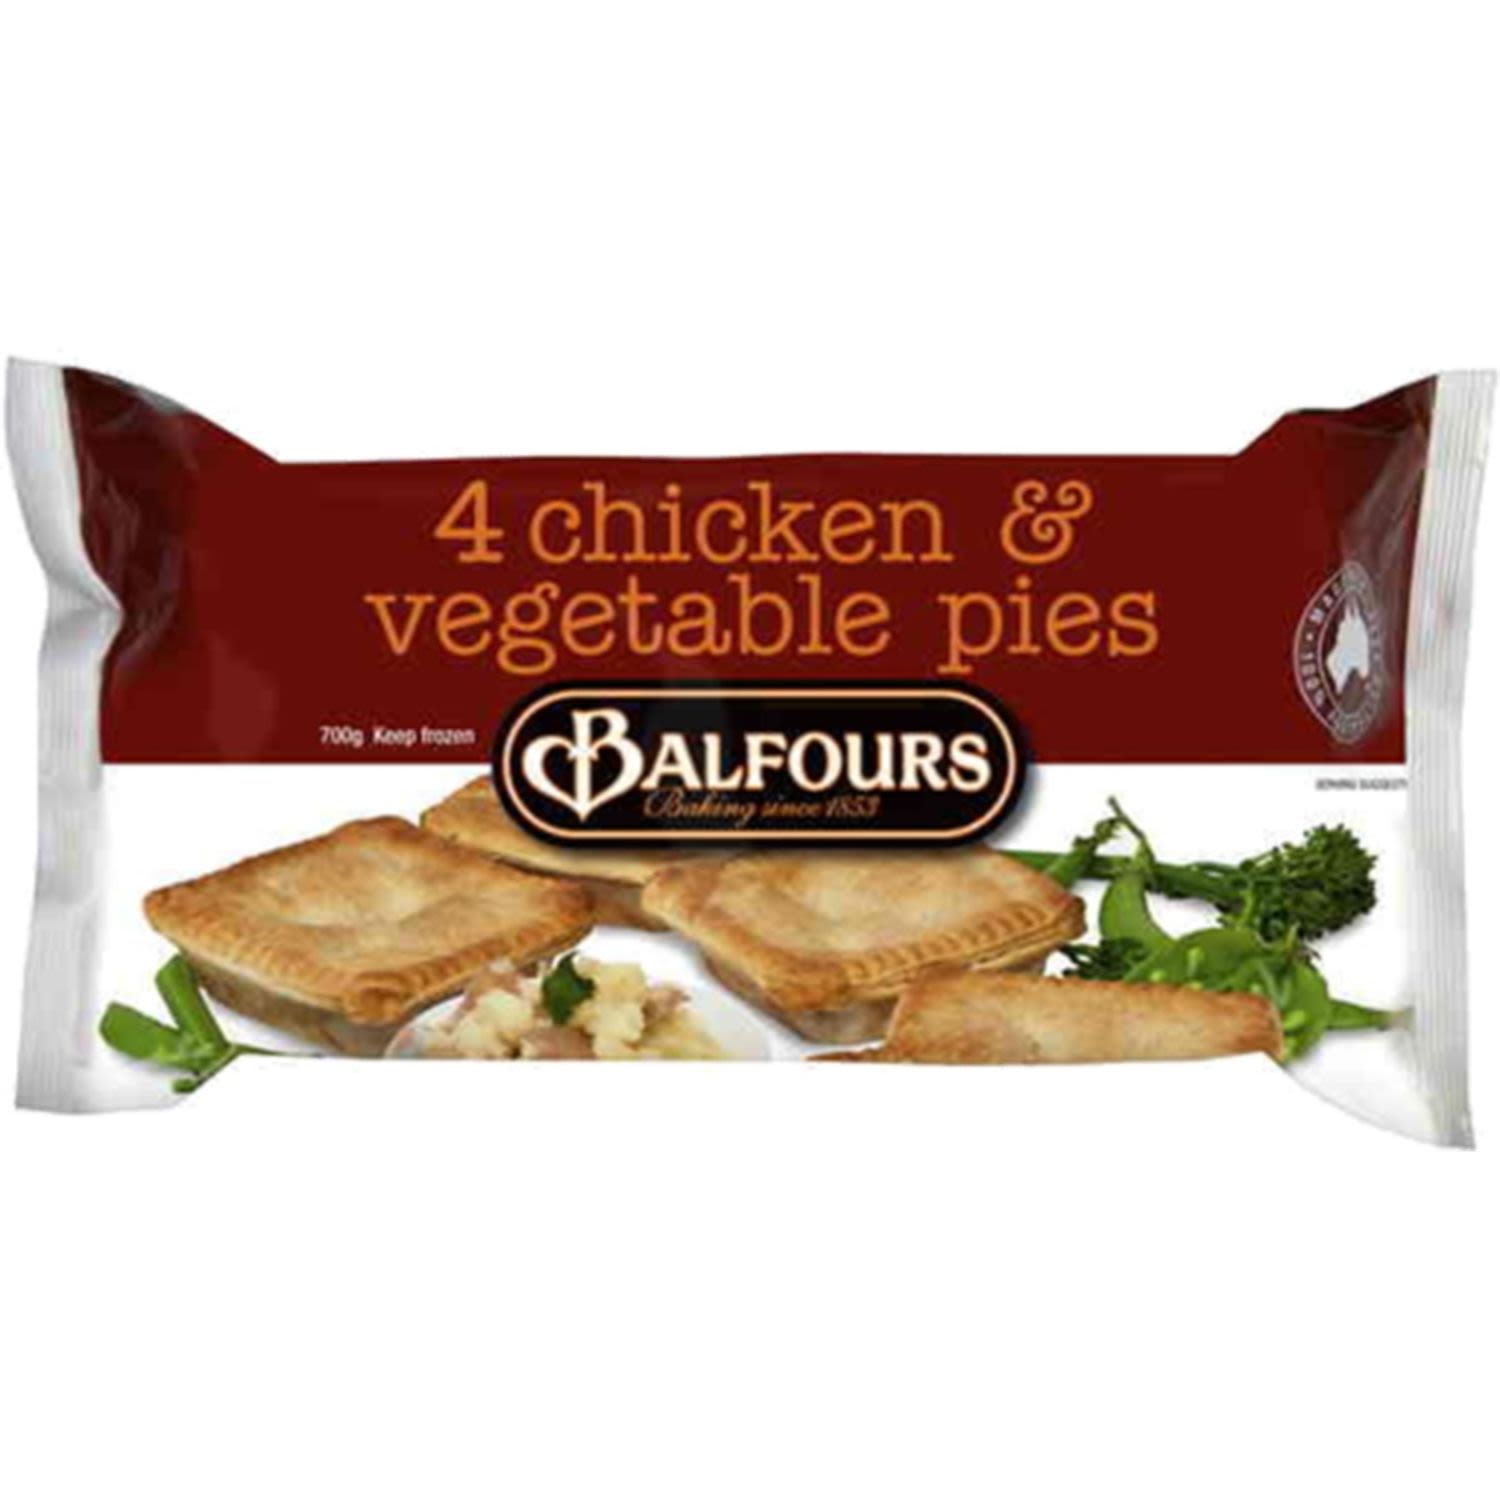 Balfours Pie Chicken & Vegetable, 4 Each